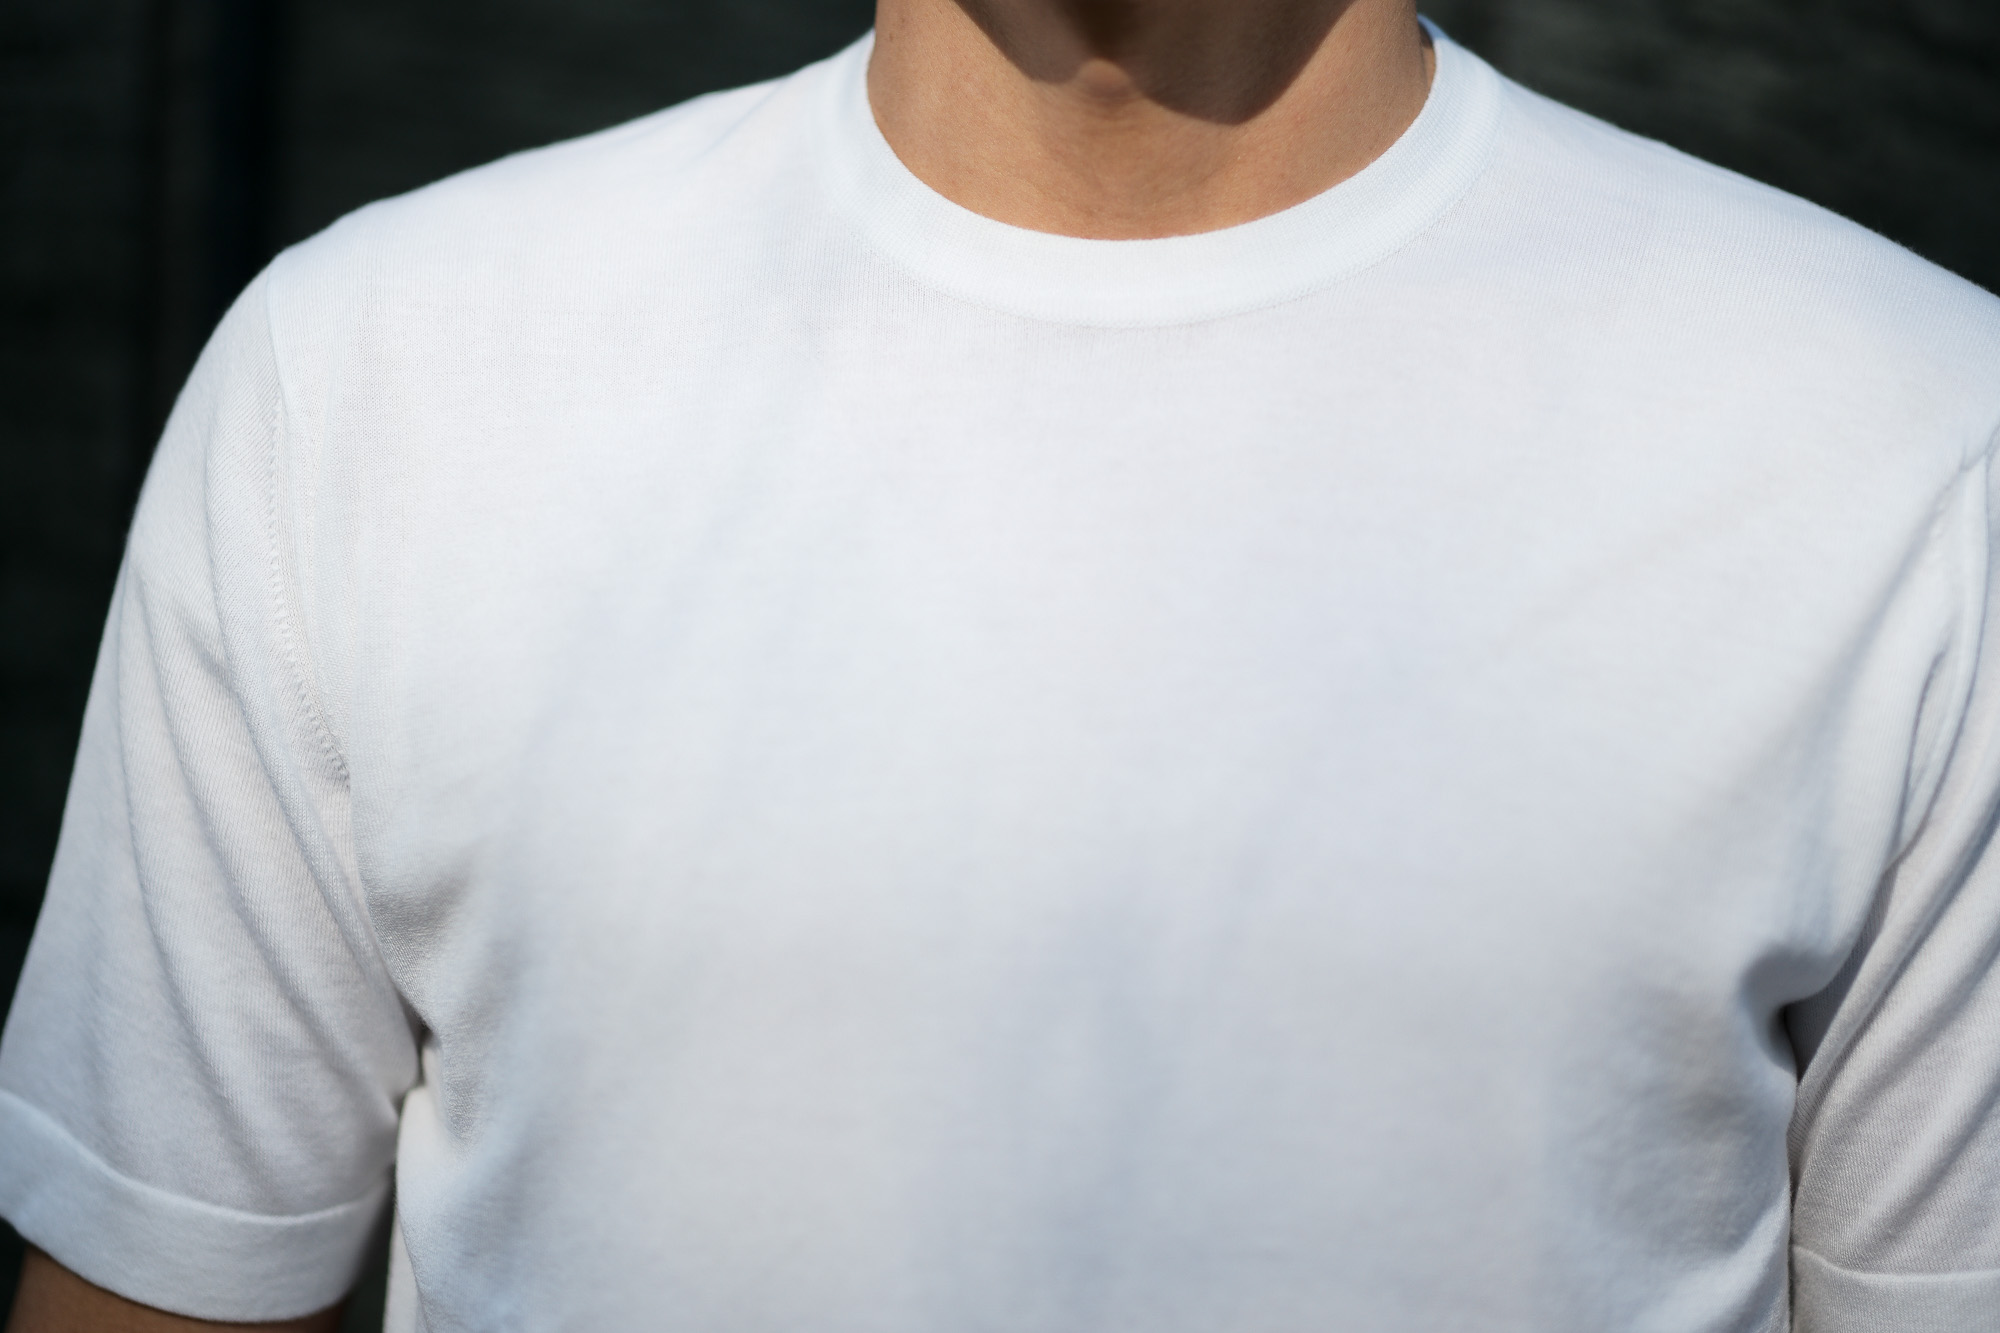 JOHN SMEDLEY(ジョンスメドレー) LORCA (ロルカ) SEA ISLAND COTTON (シーアイランドコットン) コットンニット Tシャツ WHITE (ホワイト) Made in England (イギリス製) 2020 春夏新作 愛知 名古屋 altoediritto アルトエデリット